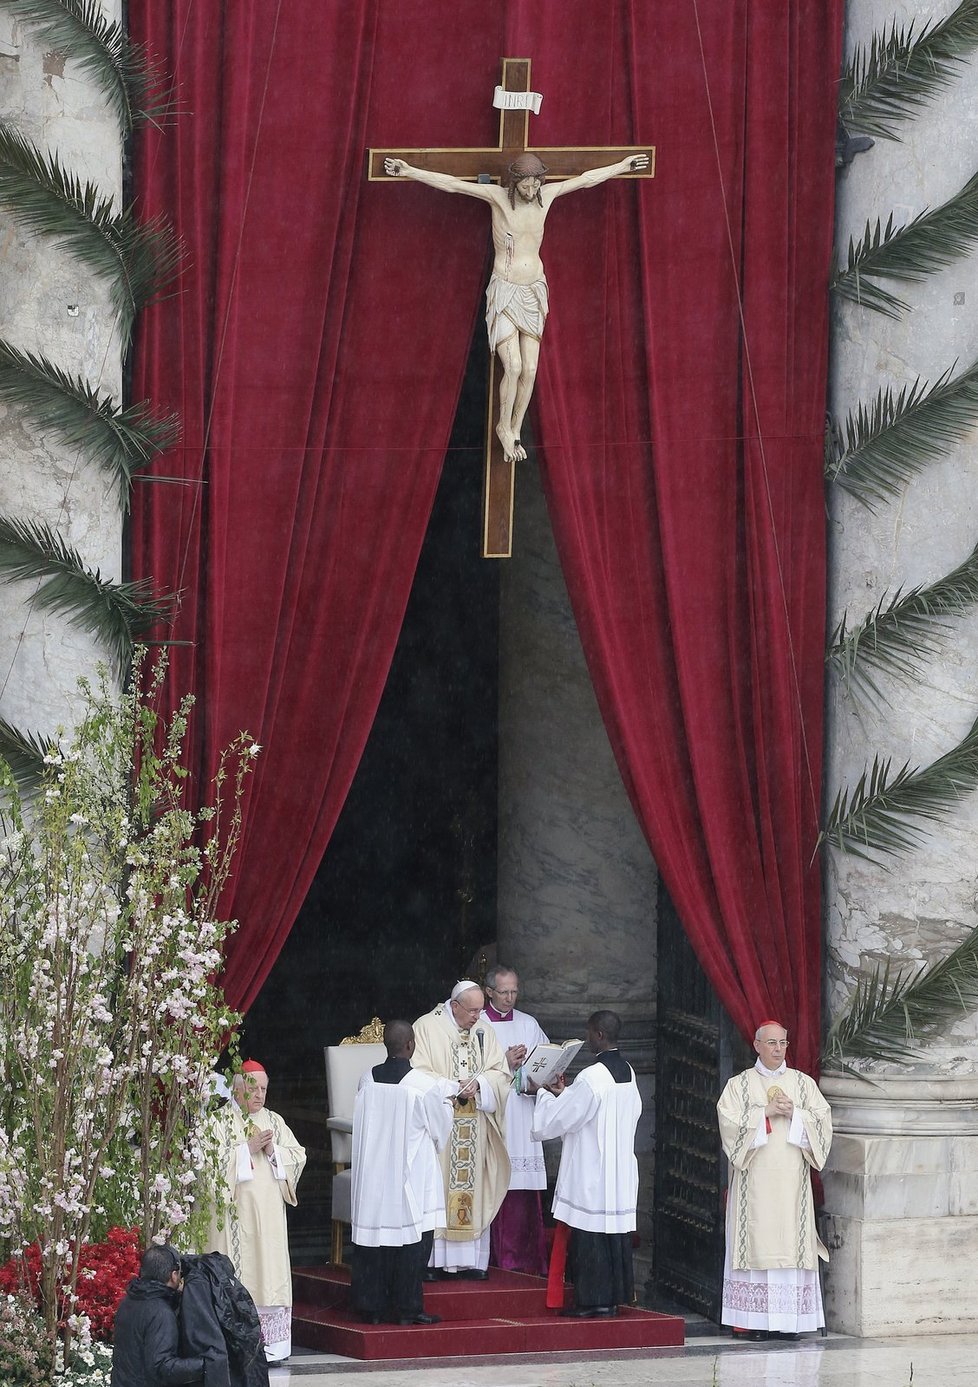 Papež František odsloužil velikonoční mši na Svatopetrském náměstí ve Vatikánu, které i přes deštivé počasí zaplnily desetitisíce lidí.